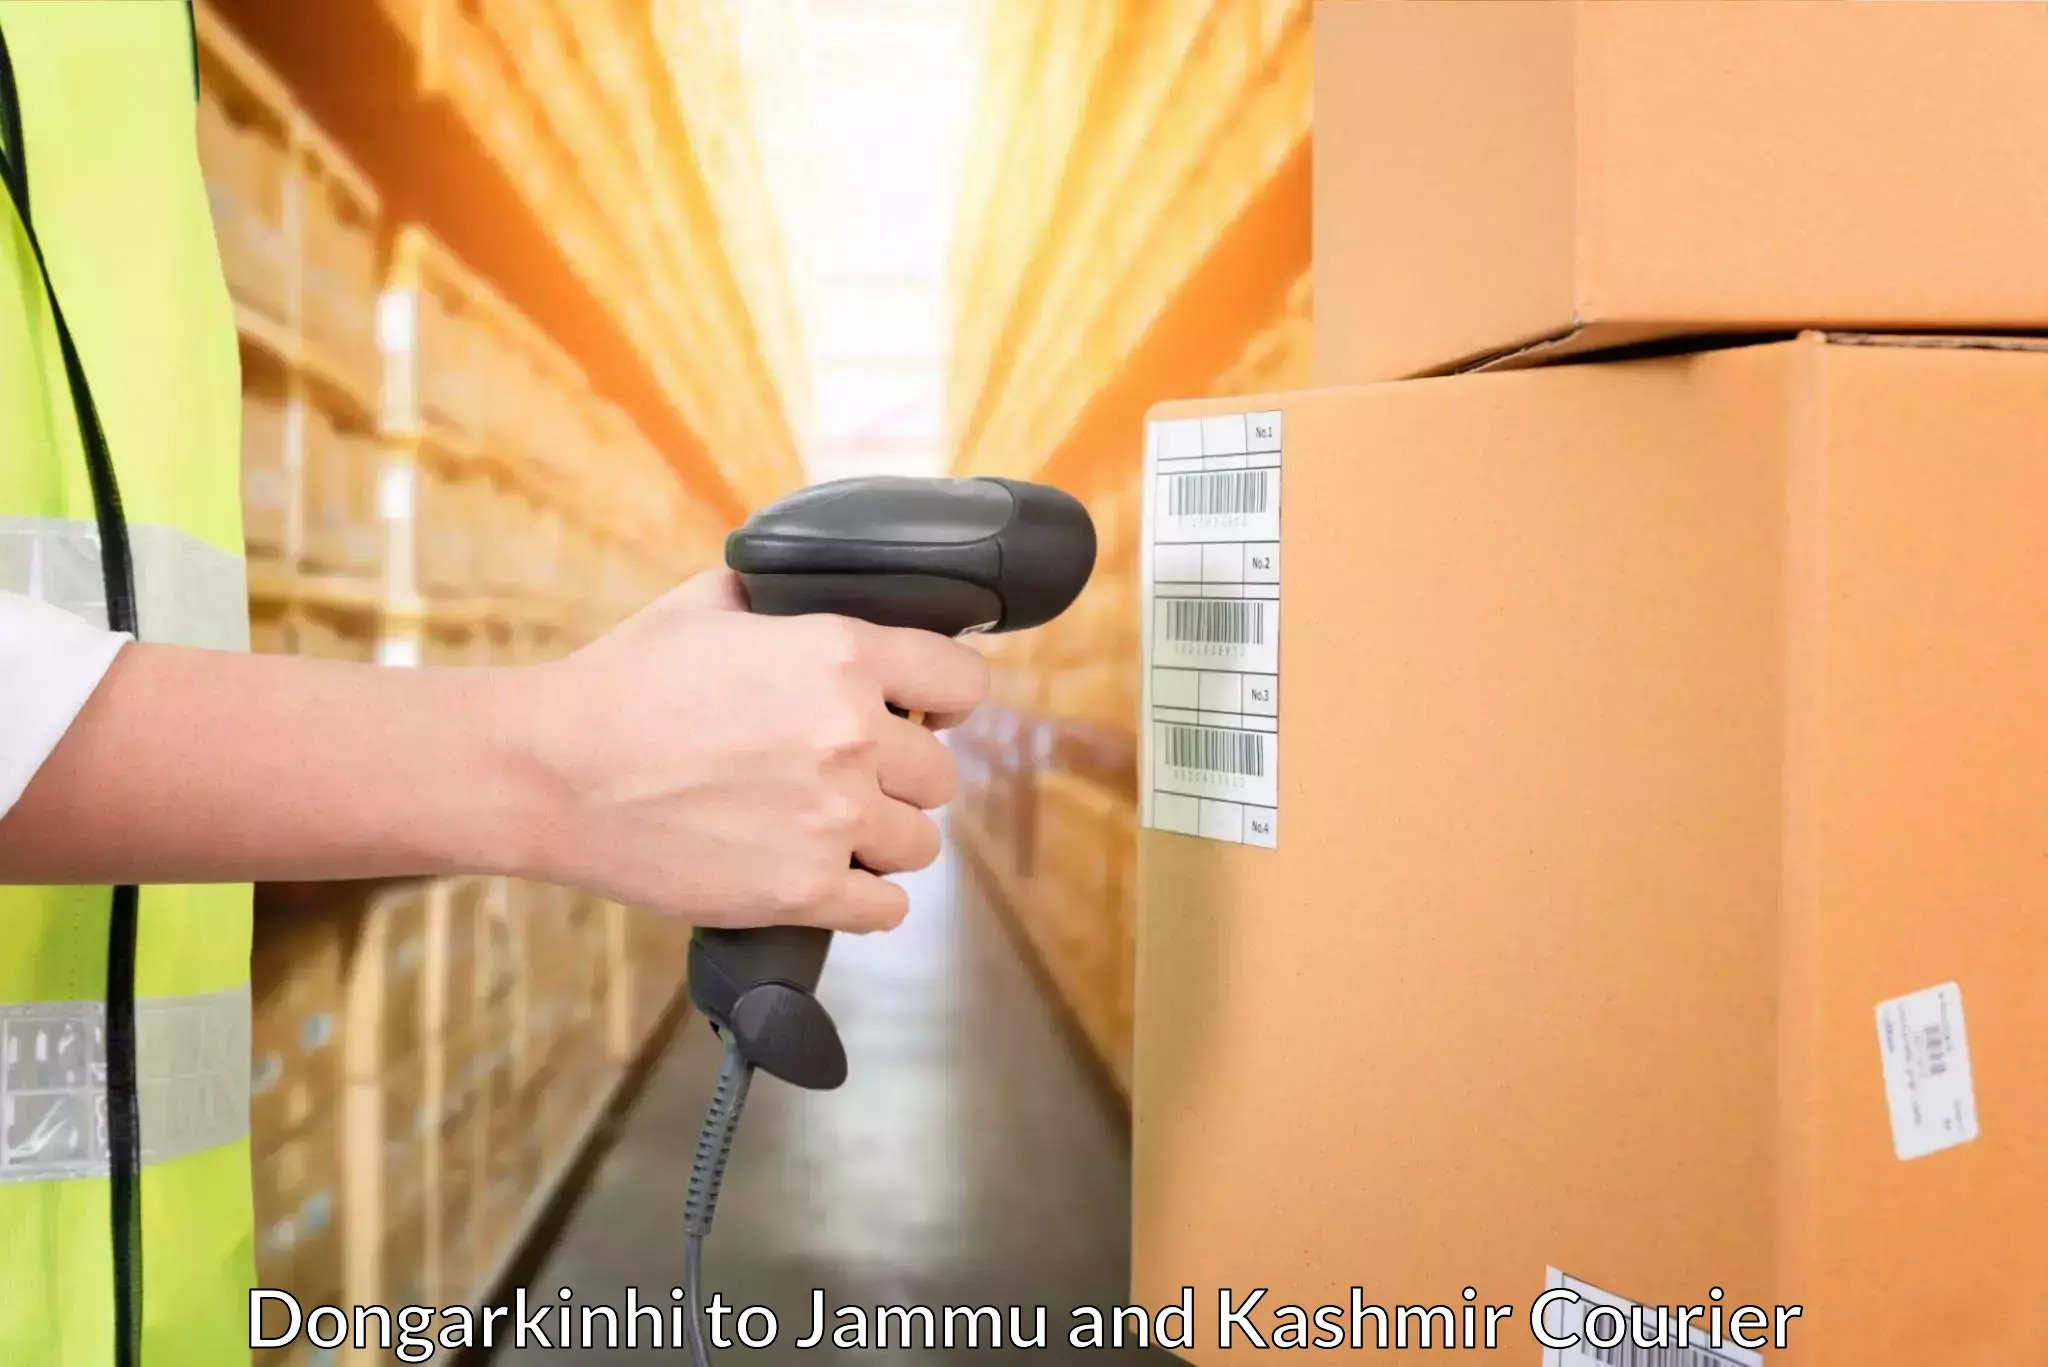 Versatile courier options Dongarkinhi to Jammu and Kashmir